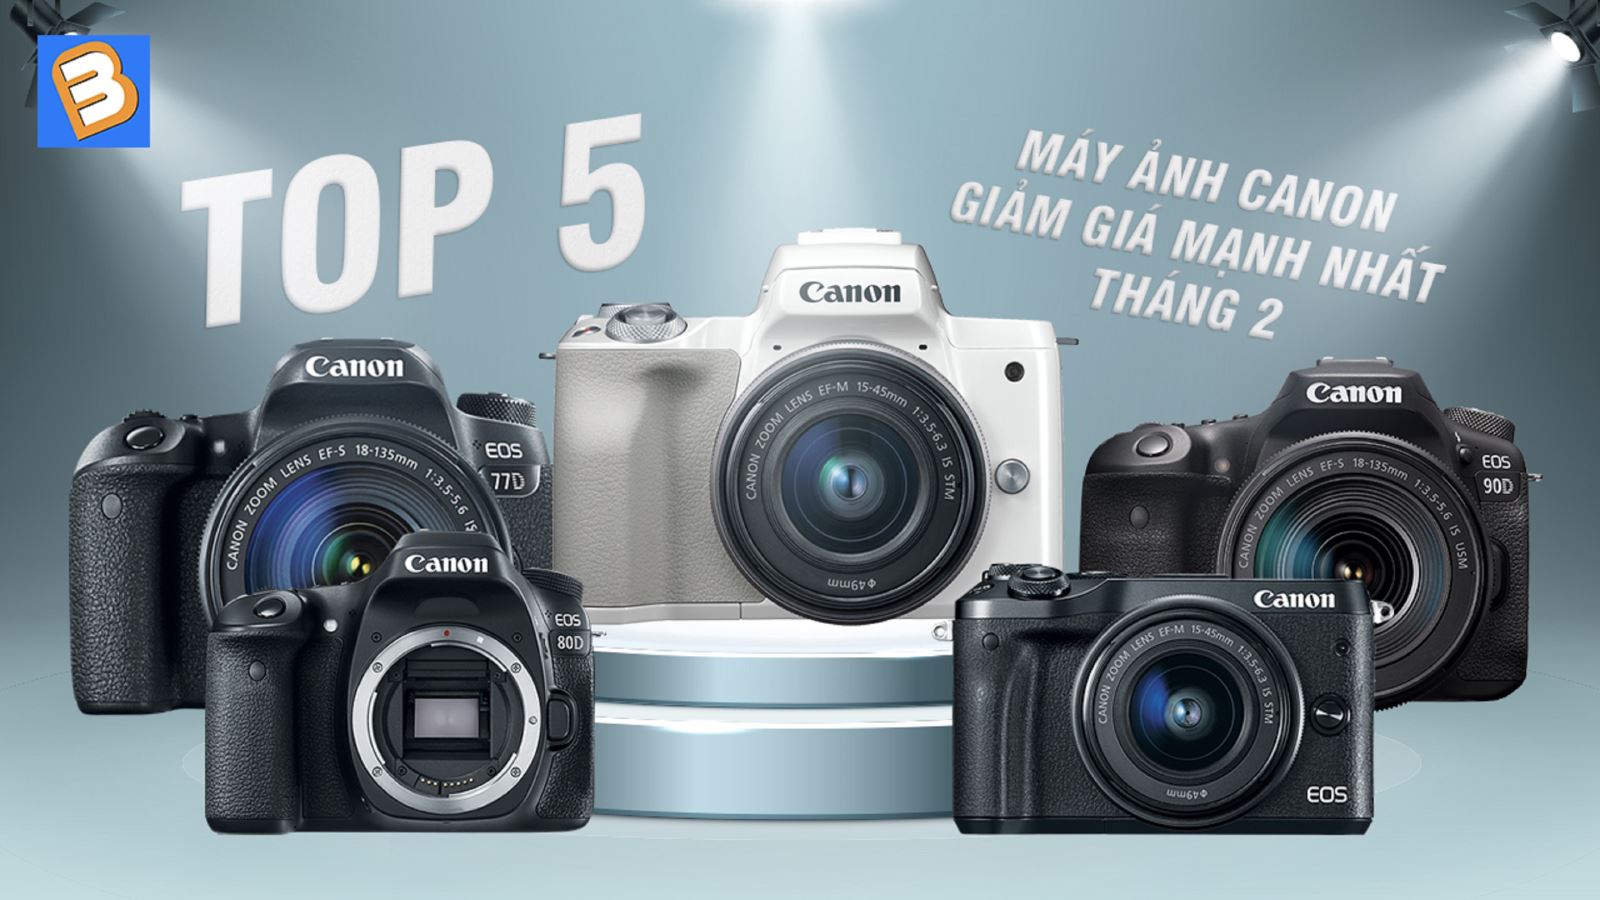 Top 5 máy ảnh Canon giảm giá mạnh nhất tháng 2